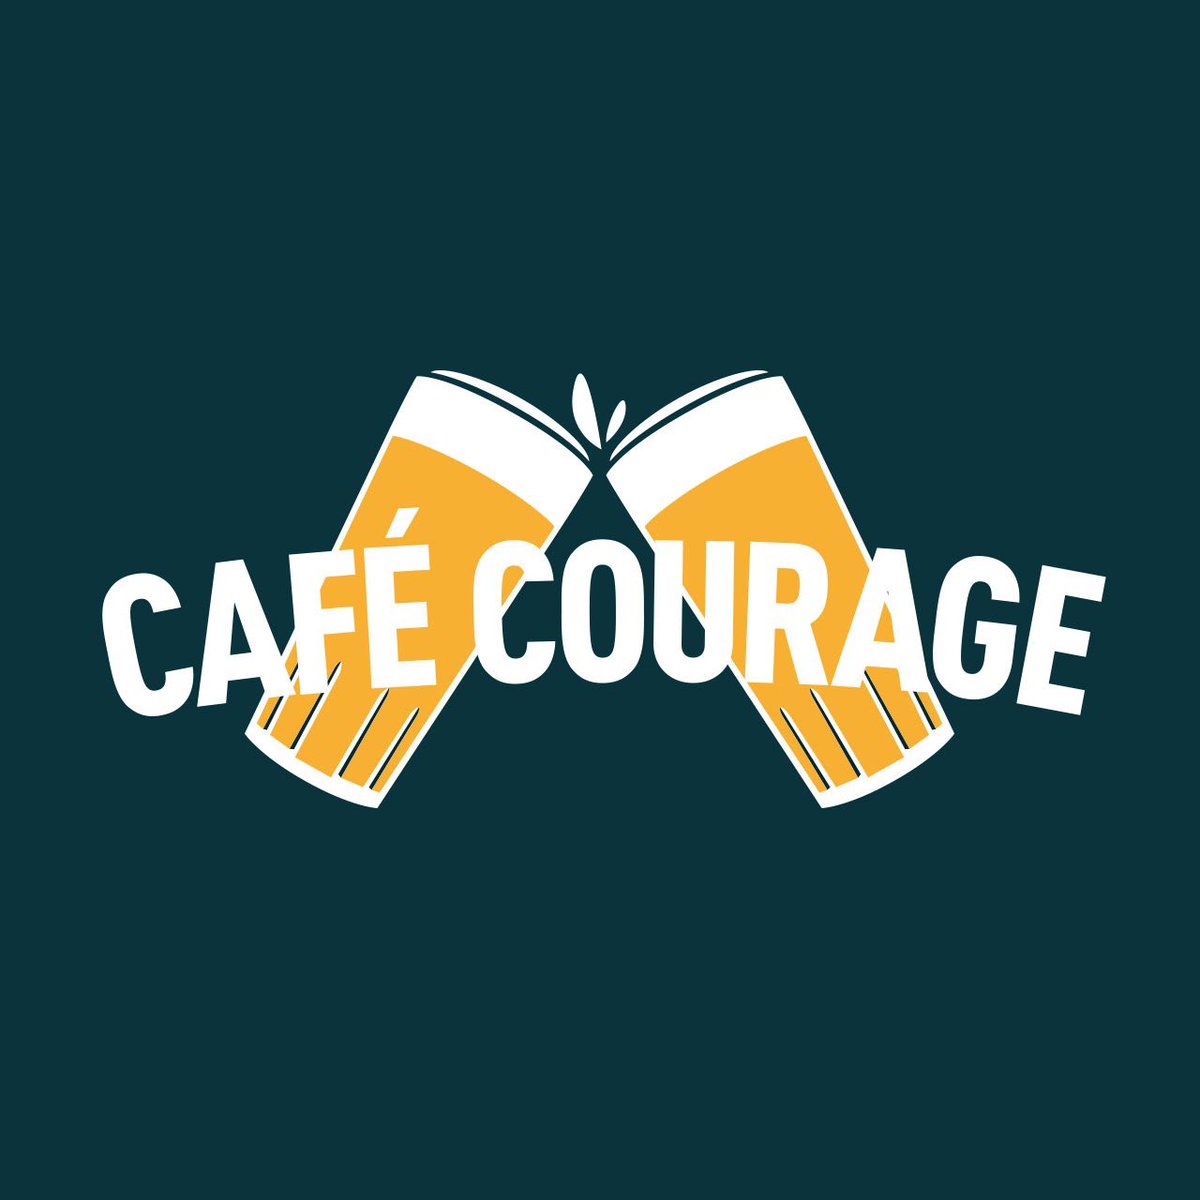 Aujourd'hui, nous avons lancé Café Courage, un café en ligne où les gens peuvent soutenir leur café ou restaurant préféré en ces temps difficiles en achetant leur bière maintenant en la buvant plus tard lorsque le bar rouvrira. Plus d'info sur cafecourage.be